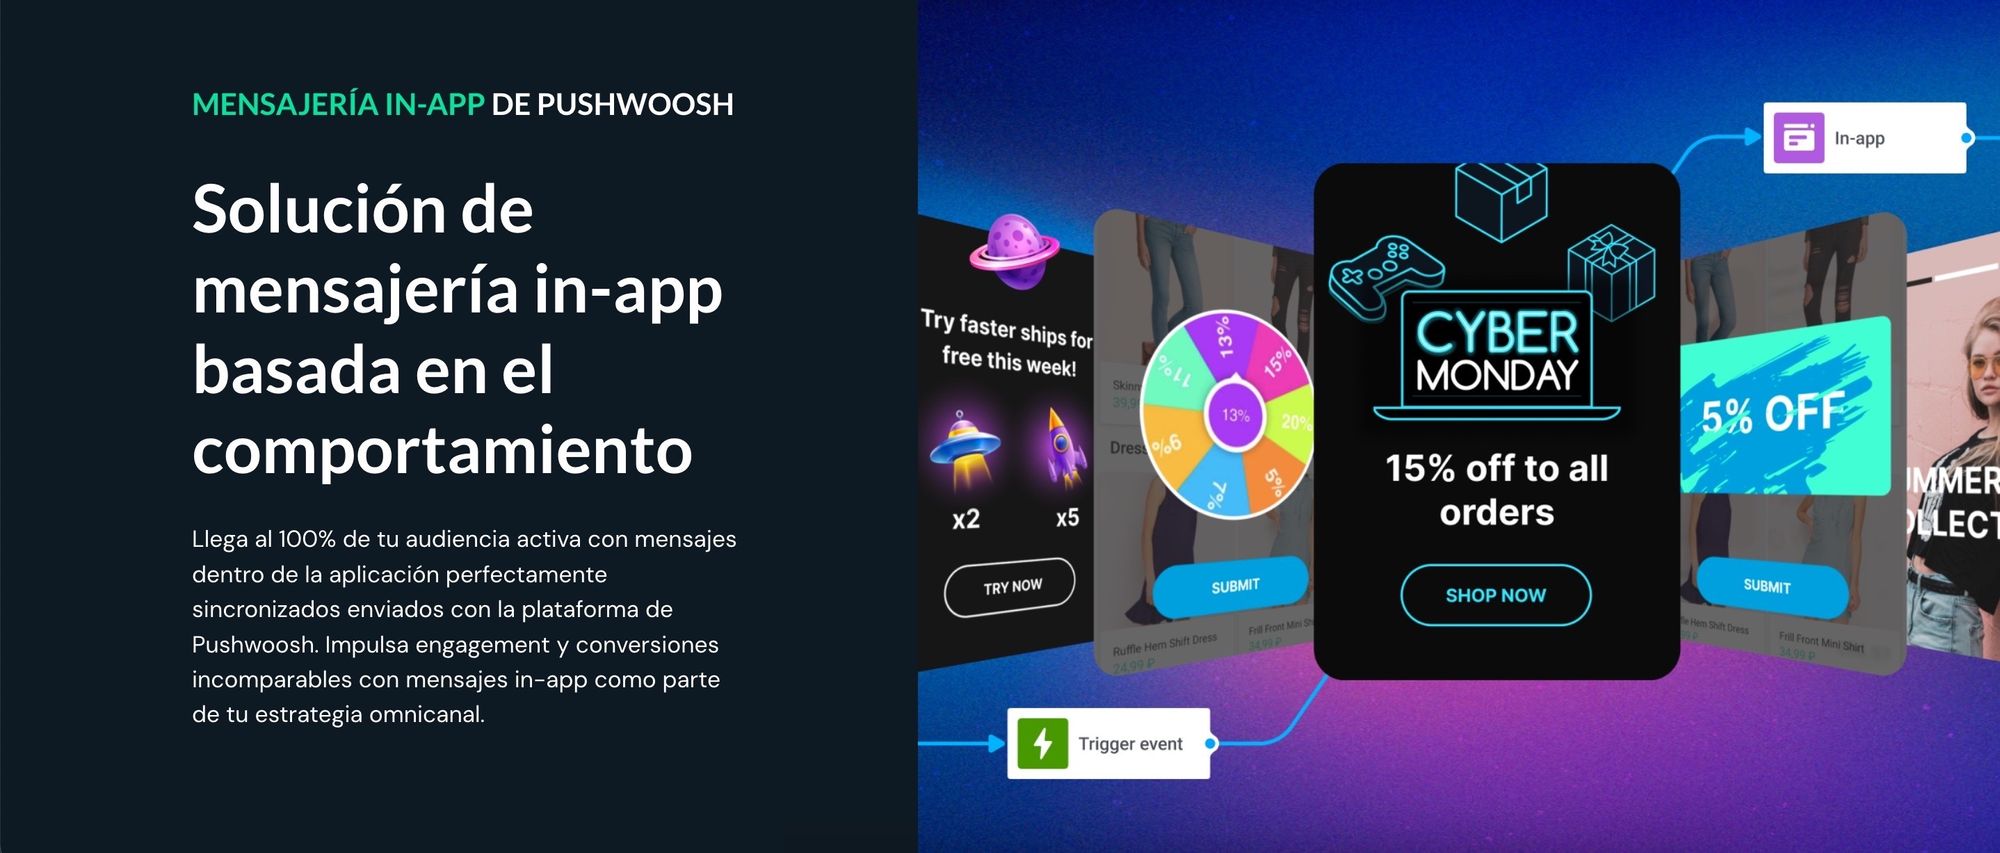 Mensajes in-app de Pushwoosh para el engagement